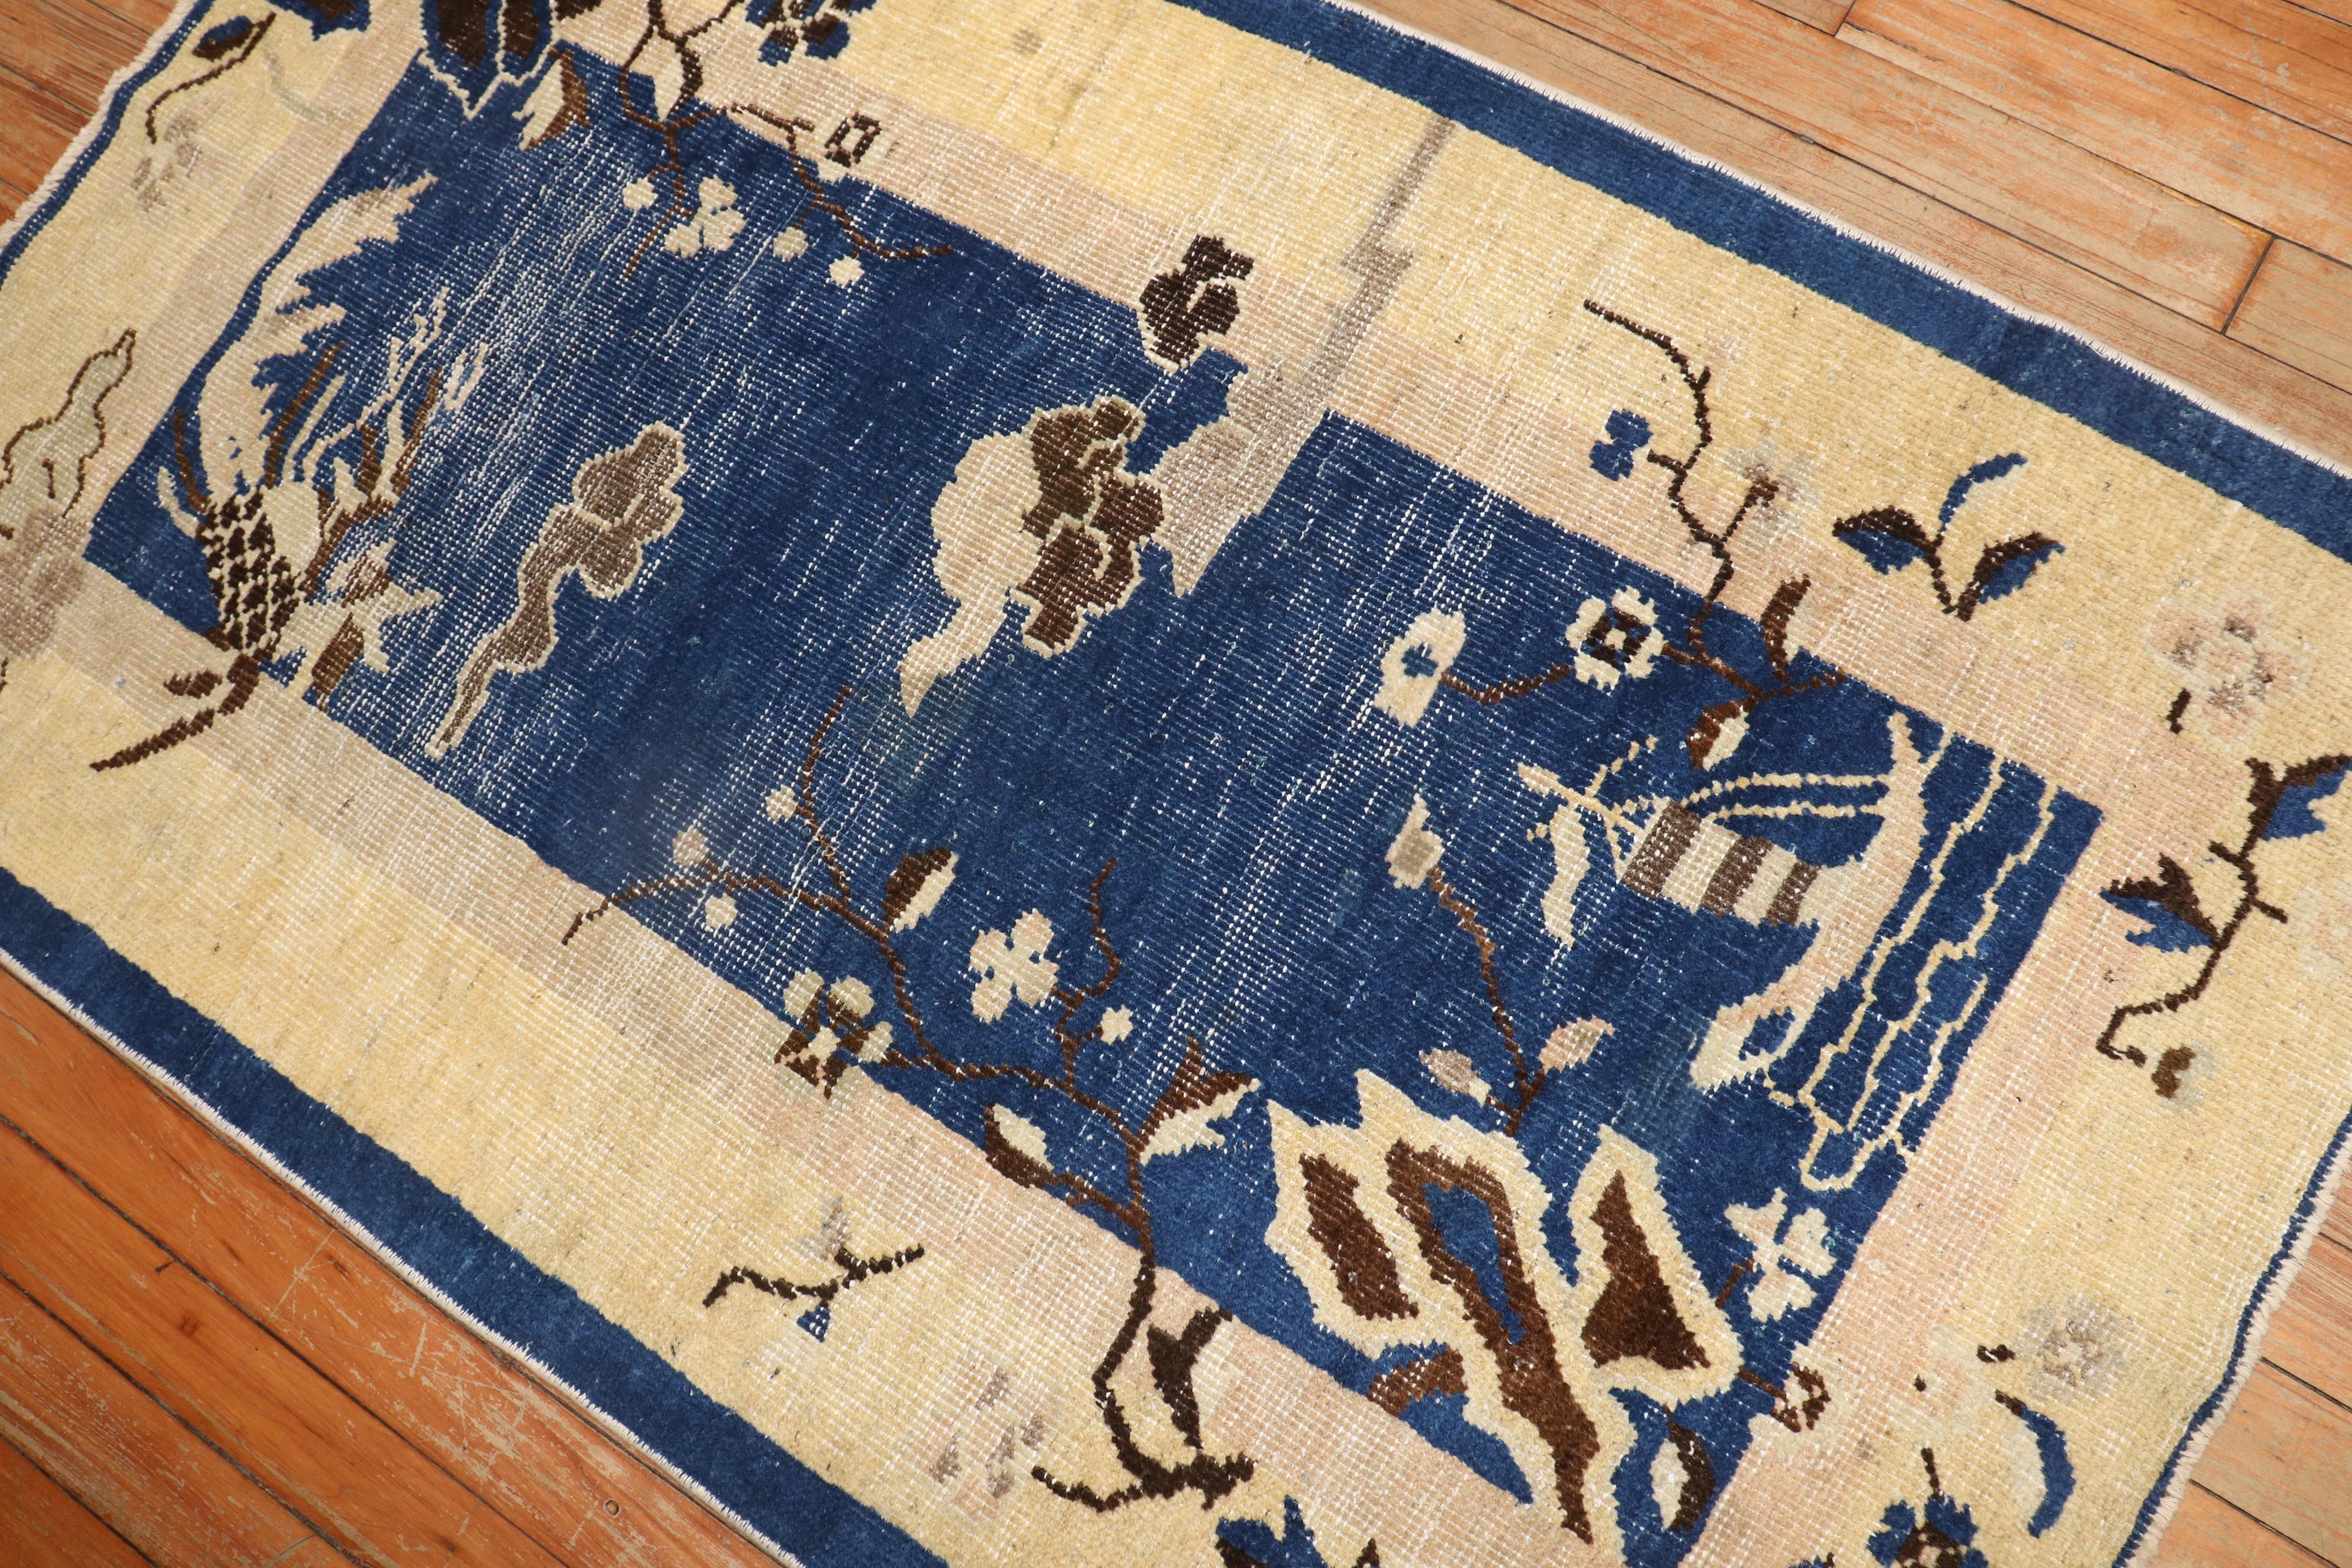 Chinesischer Peking-Teppich in Blau im Streubildformat aus dem 2. Quartal des 20. Jahrhunderts.

Maße: 2'6